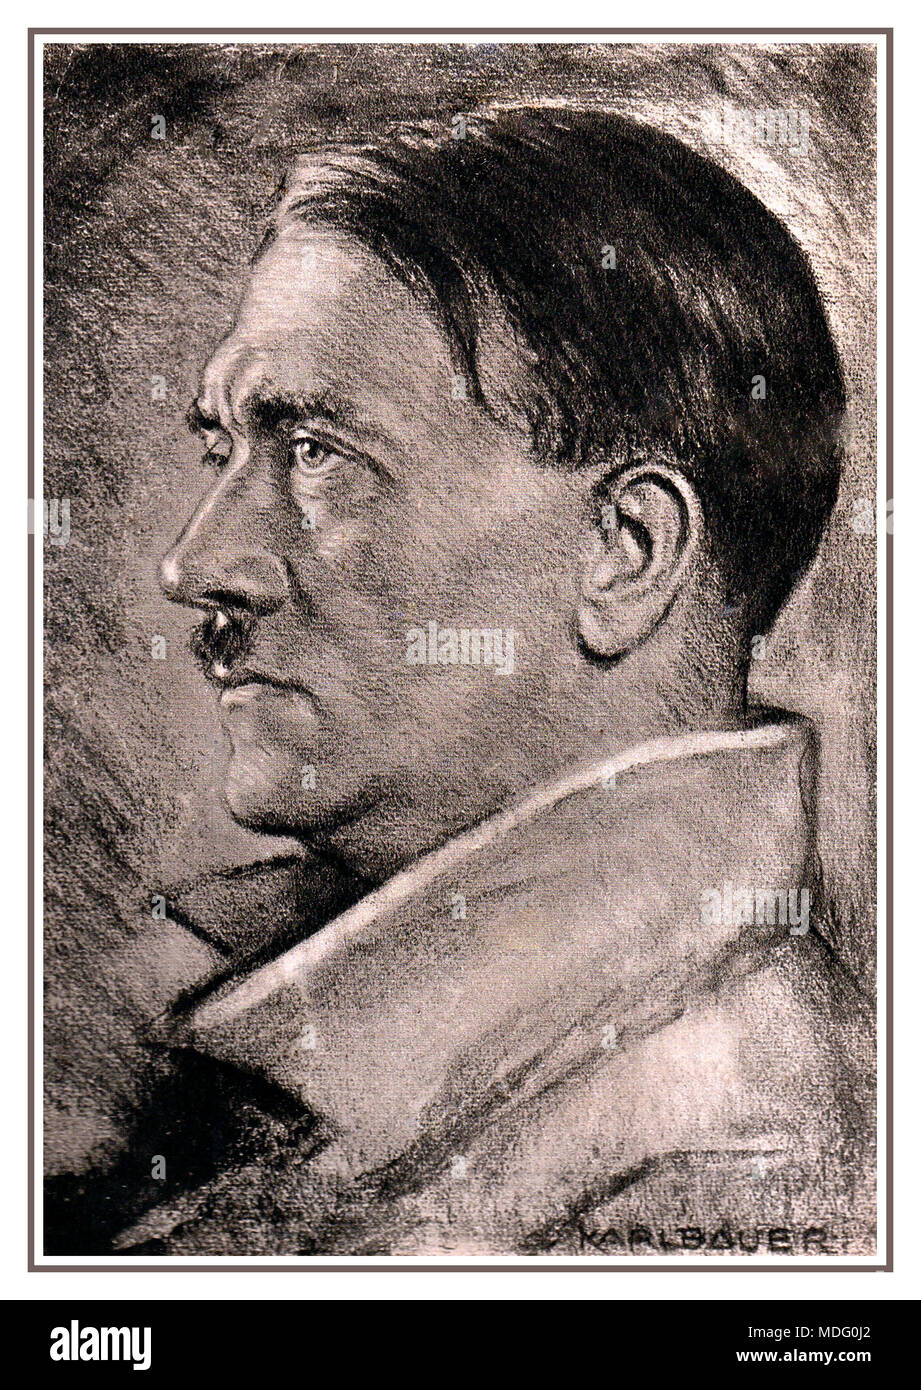 Porträt von Adolf Hitler 1938 von Karl Bauer (1868-1942) Während der Zeit des Nationalsozialismus Bauer einige Porträts von Adolf Hitler. Dafür wurde er mit der Goethe-Medaille für Kunst und Wissenschaft durch Hitler 1938 ausgezeichnet. Stockfoto